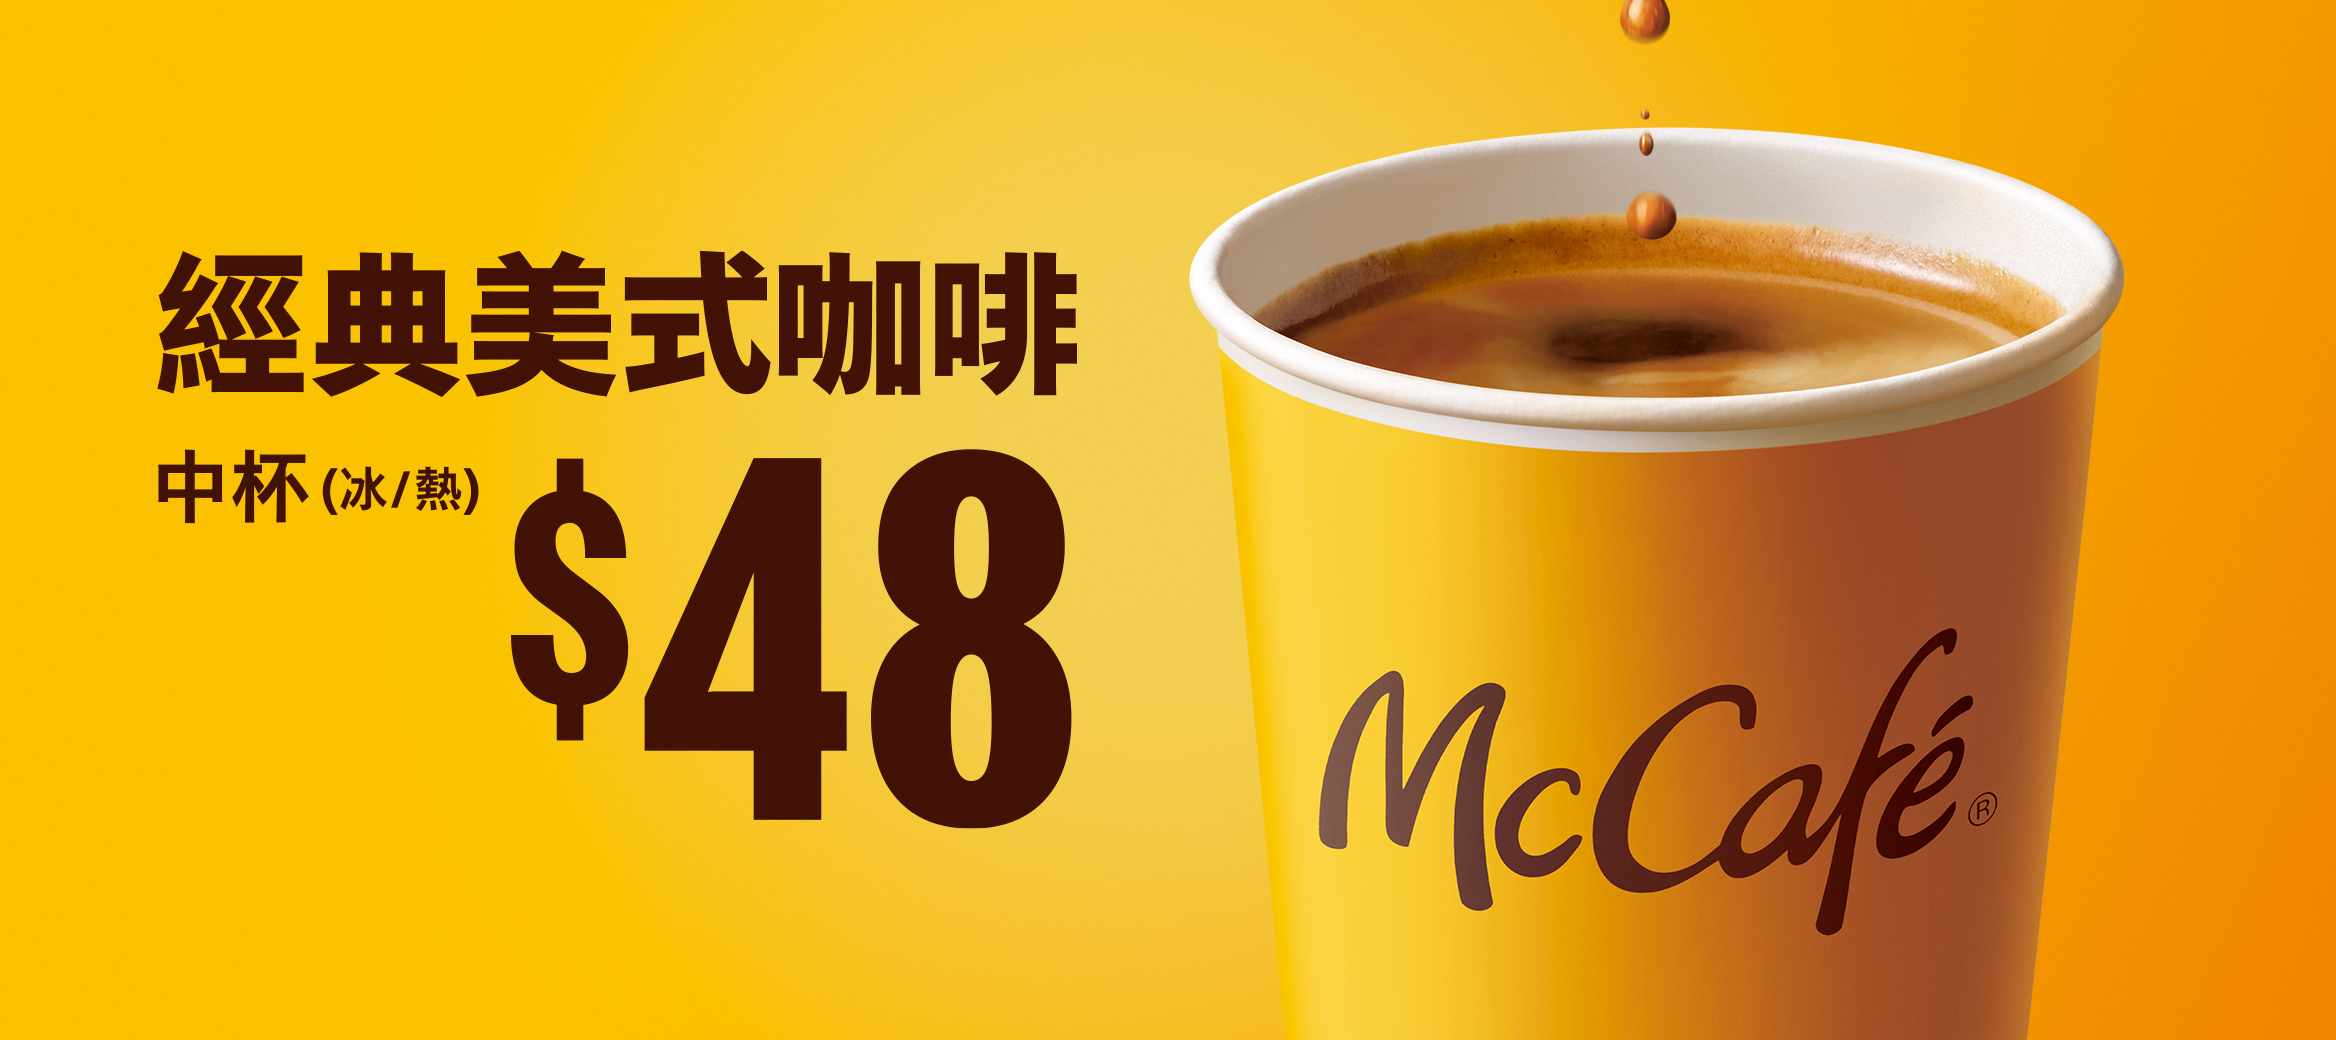 【剛剛好的好咖啡】麥當勞經典美式咖啡只要$48